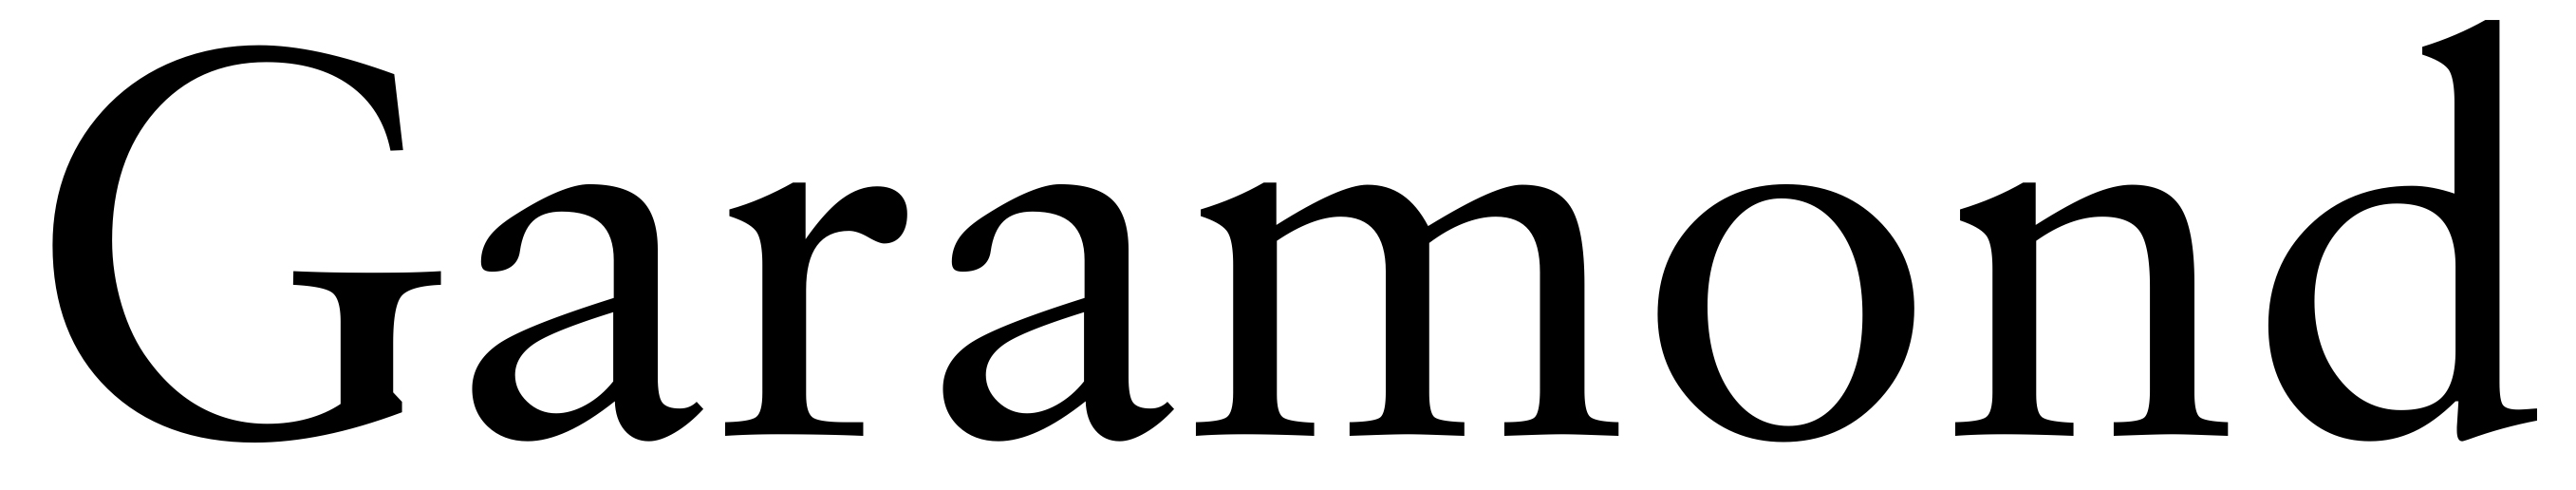 Garamond typeface